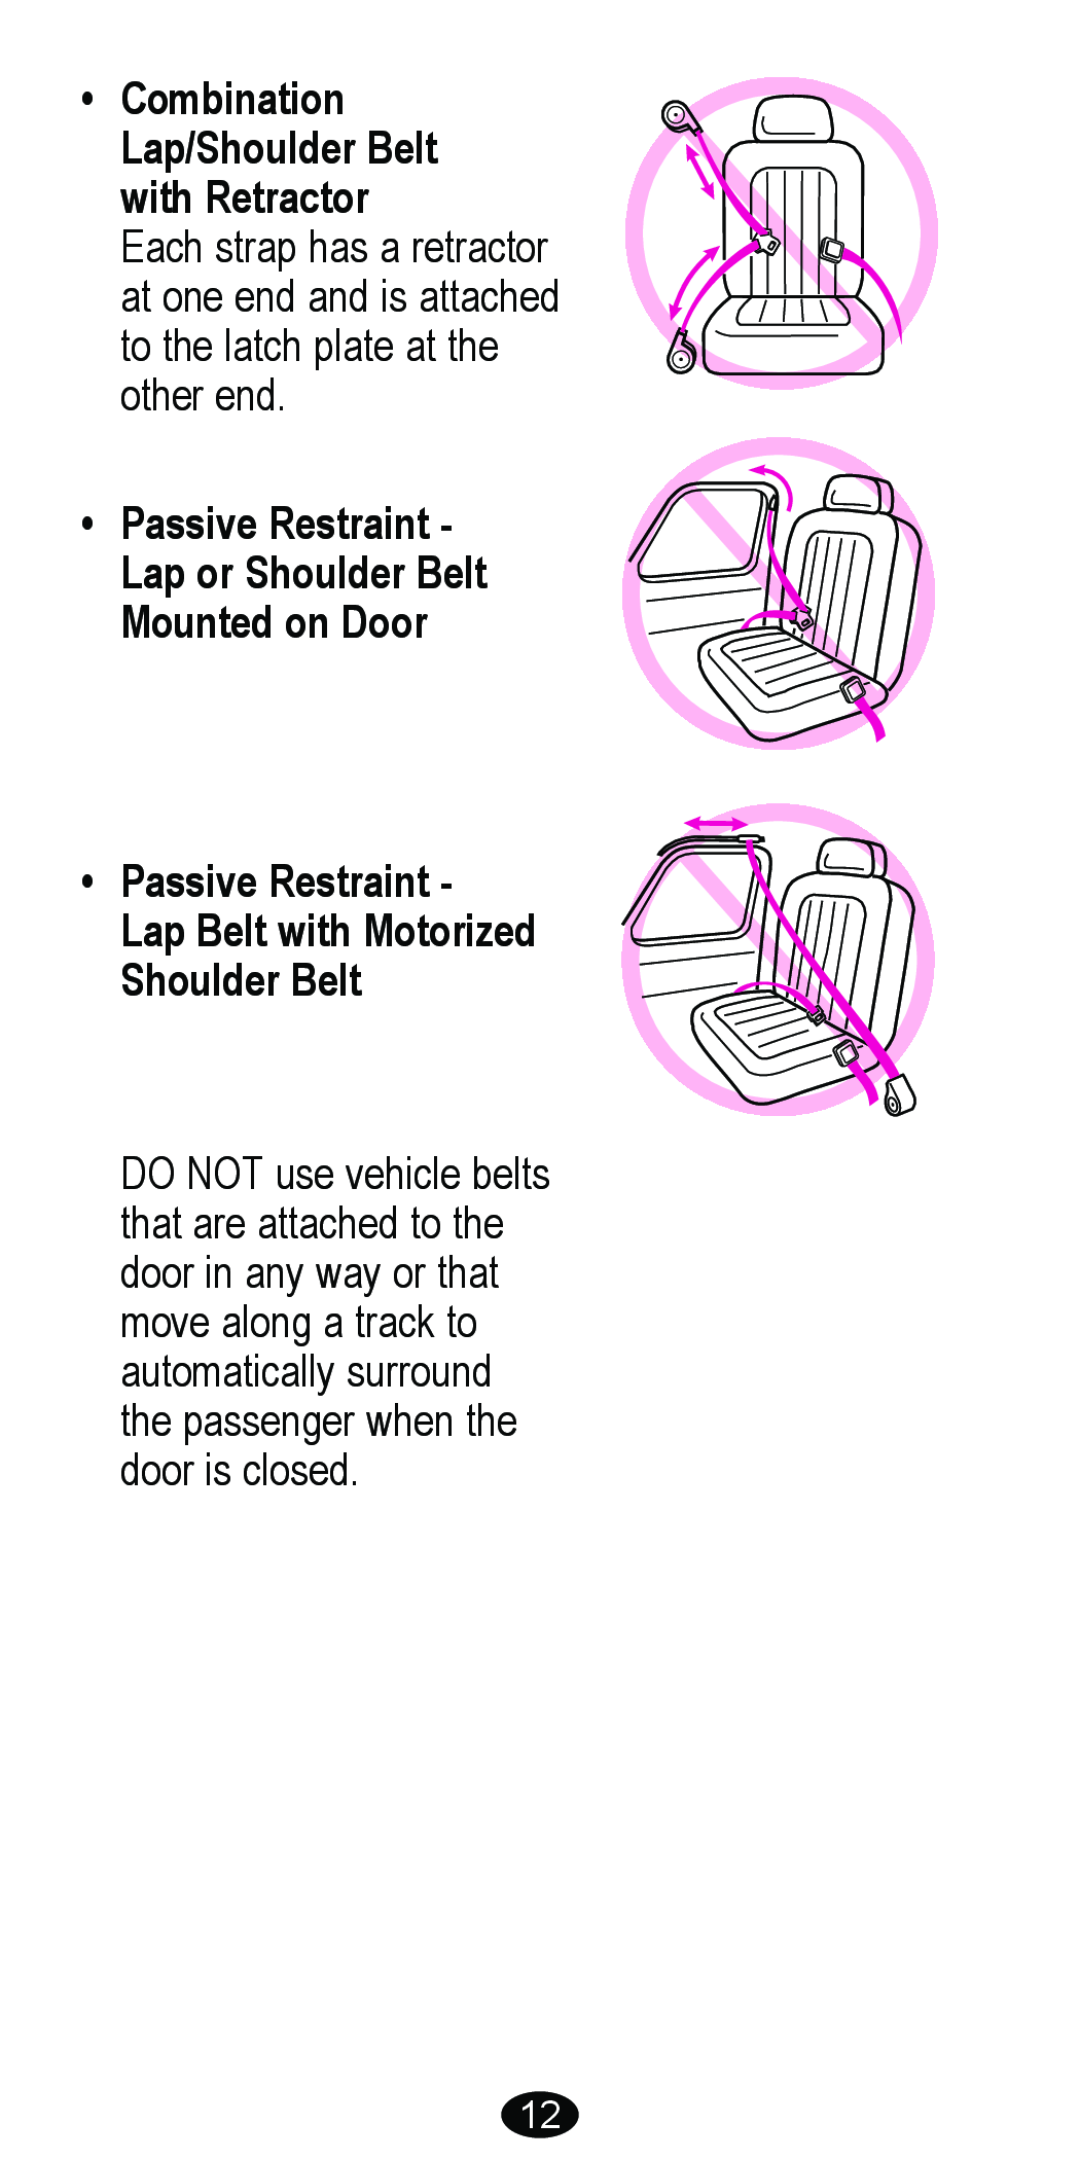 Graco 8481 Combination Lap/Shoulder Belt with Retractor, Passive Restraint - Lap or Shoulder Belt Mounted on Door 